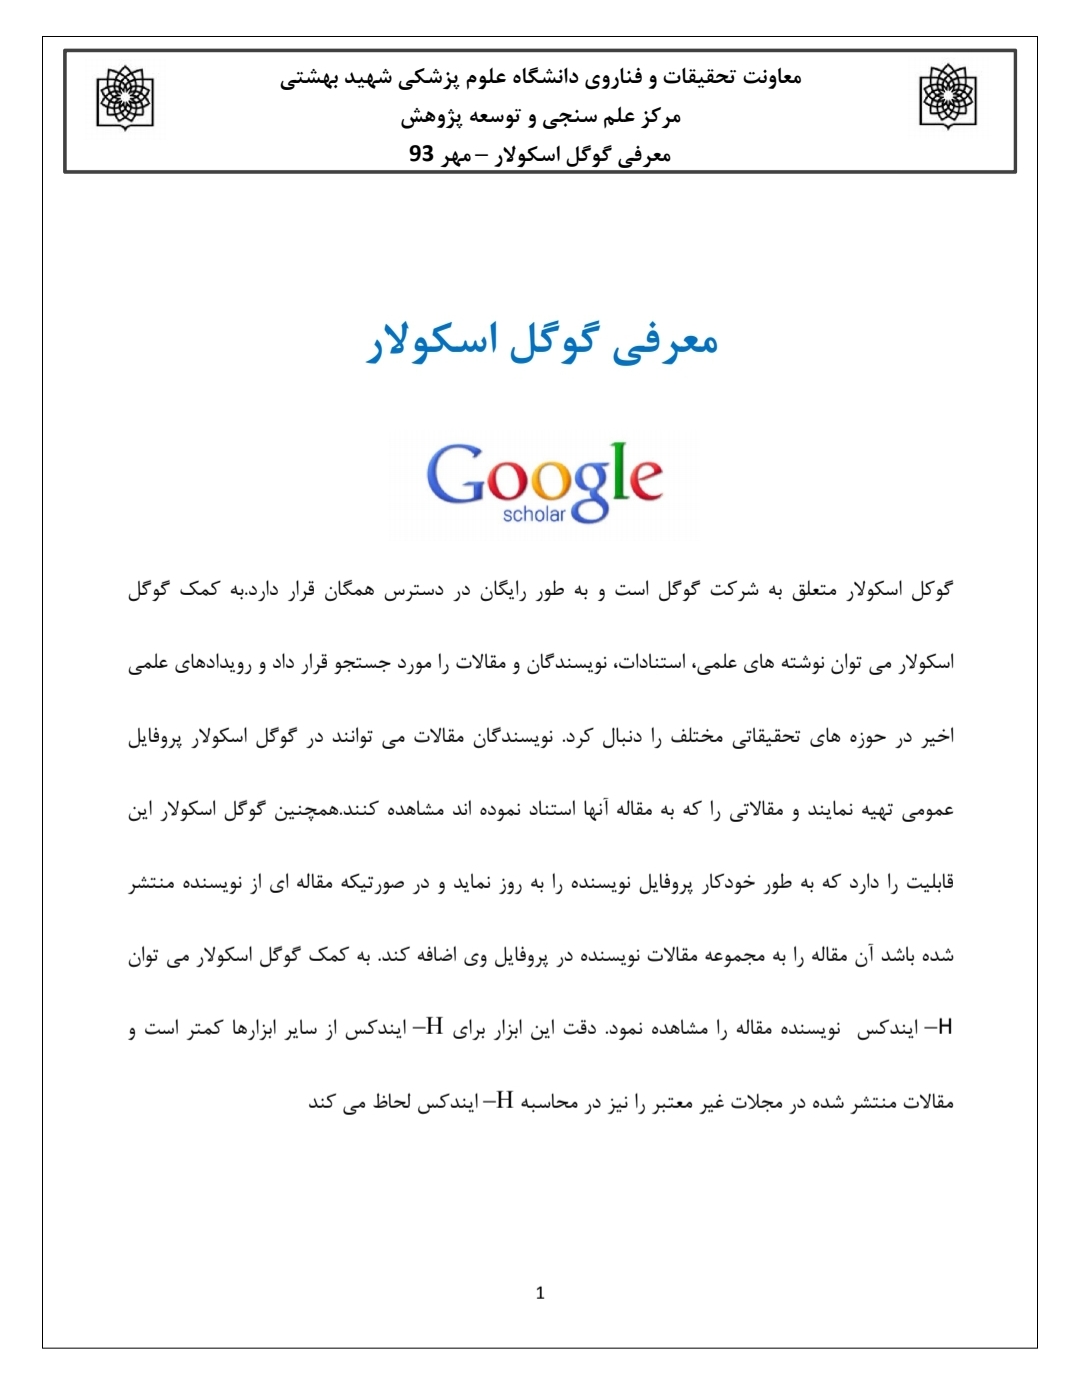 آموزش کامل گوگل اسکالر